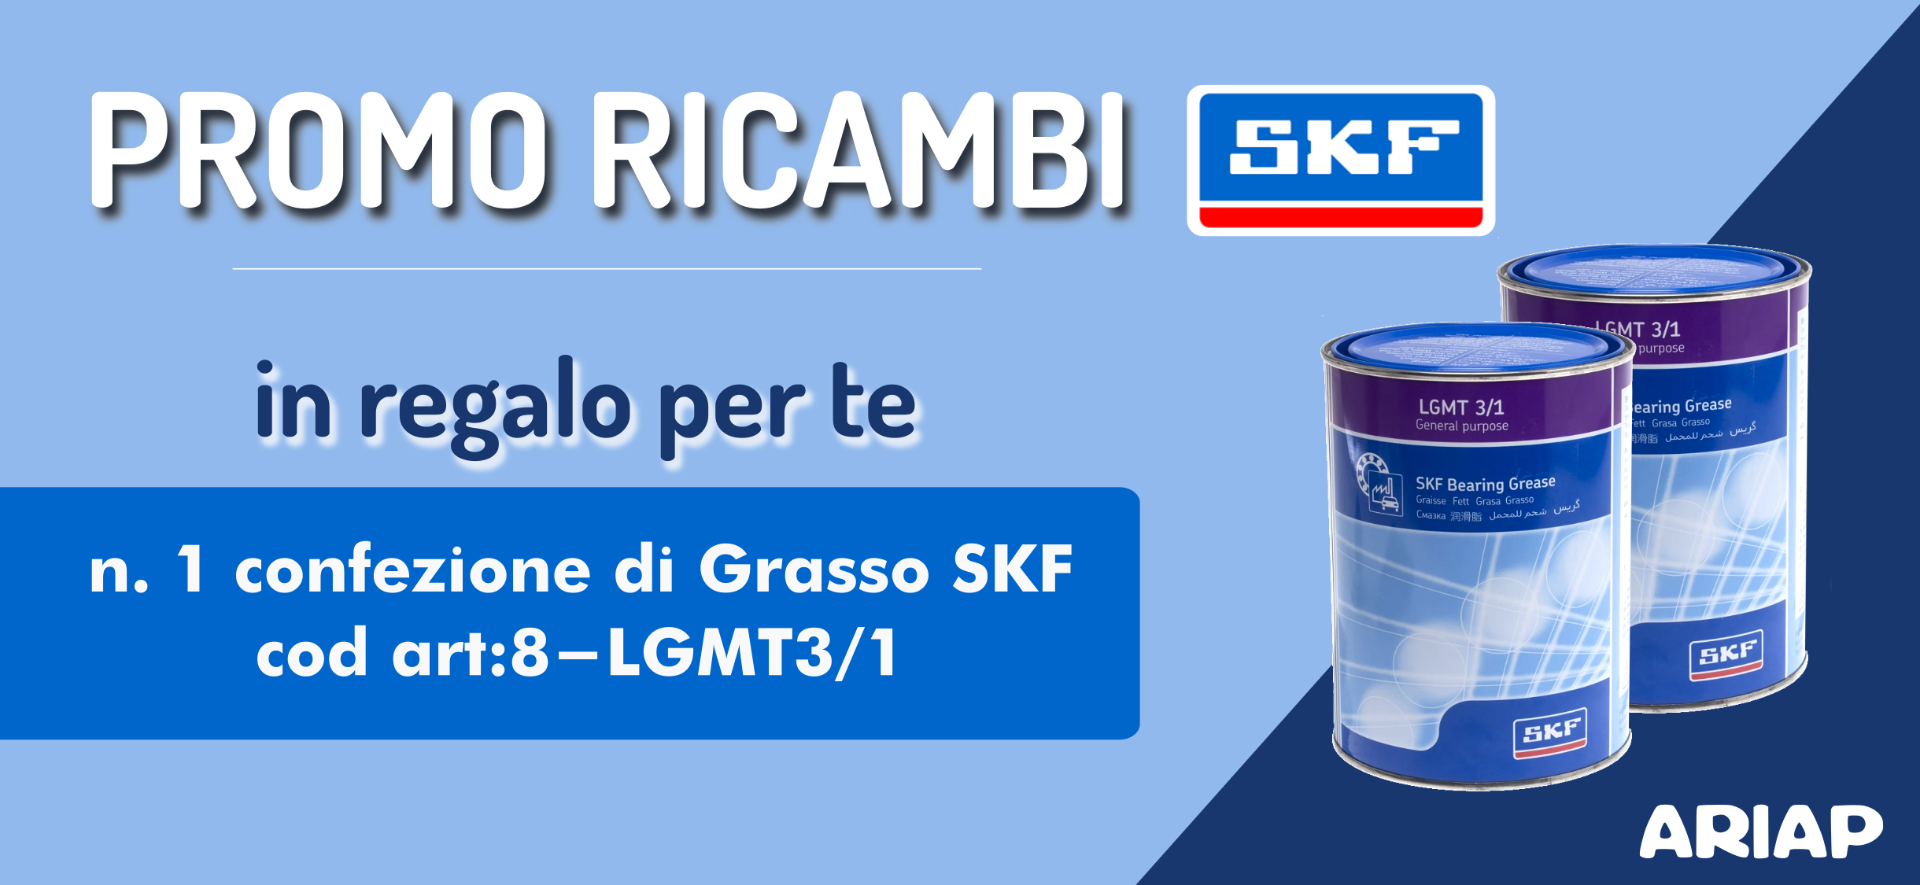 Promozione ricambi SKF - Ariap ricambi camion Sicilia